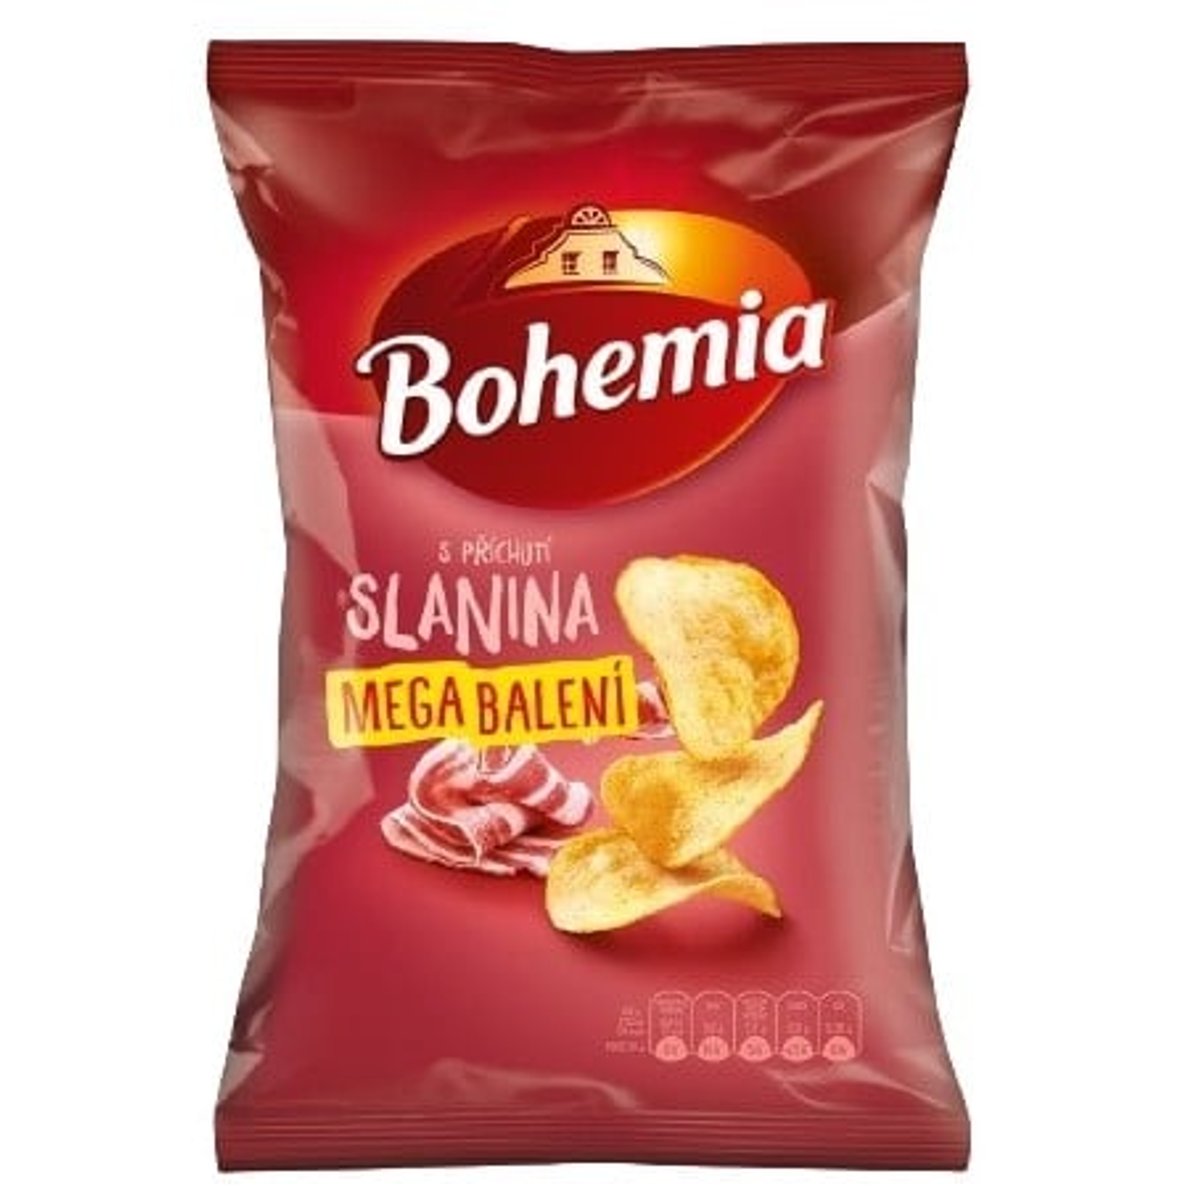 Bohemia Slaninové